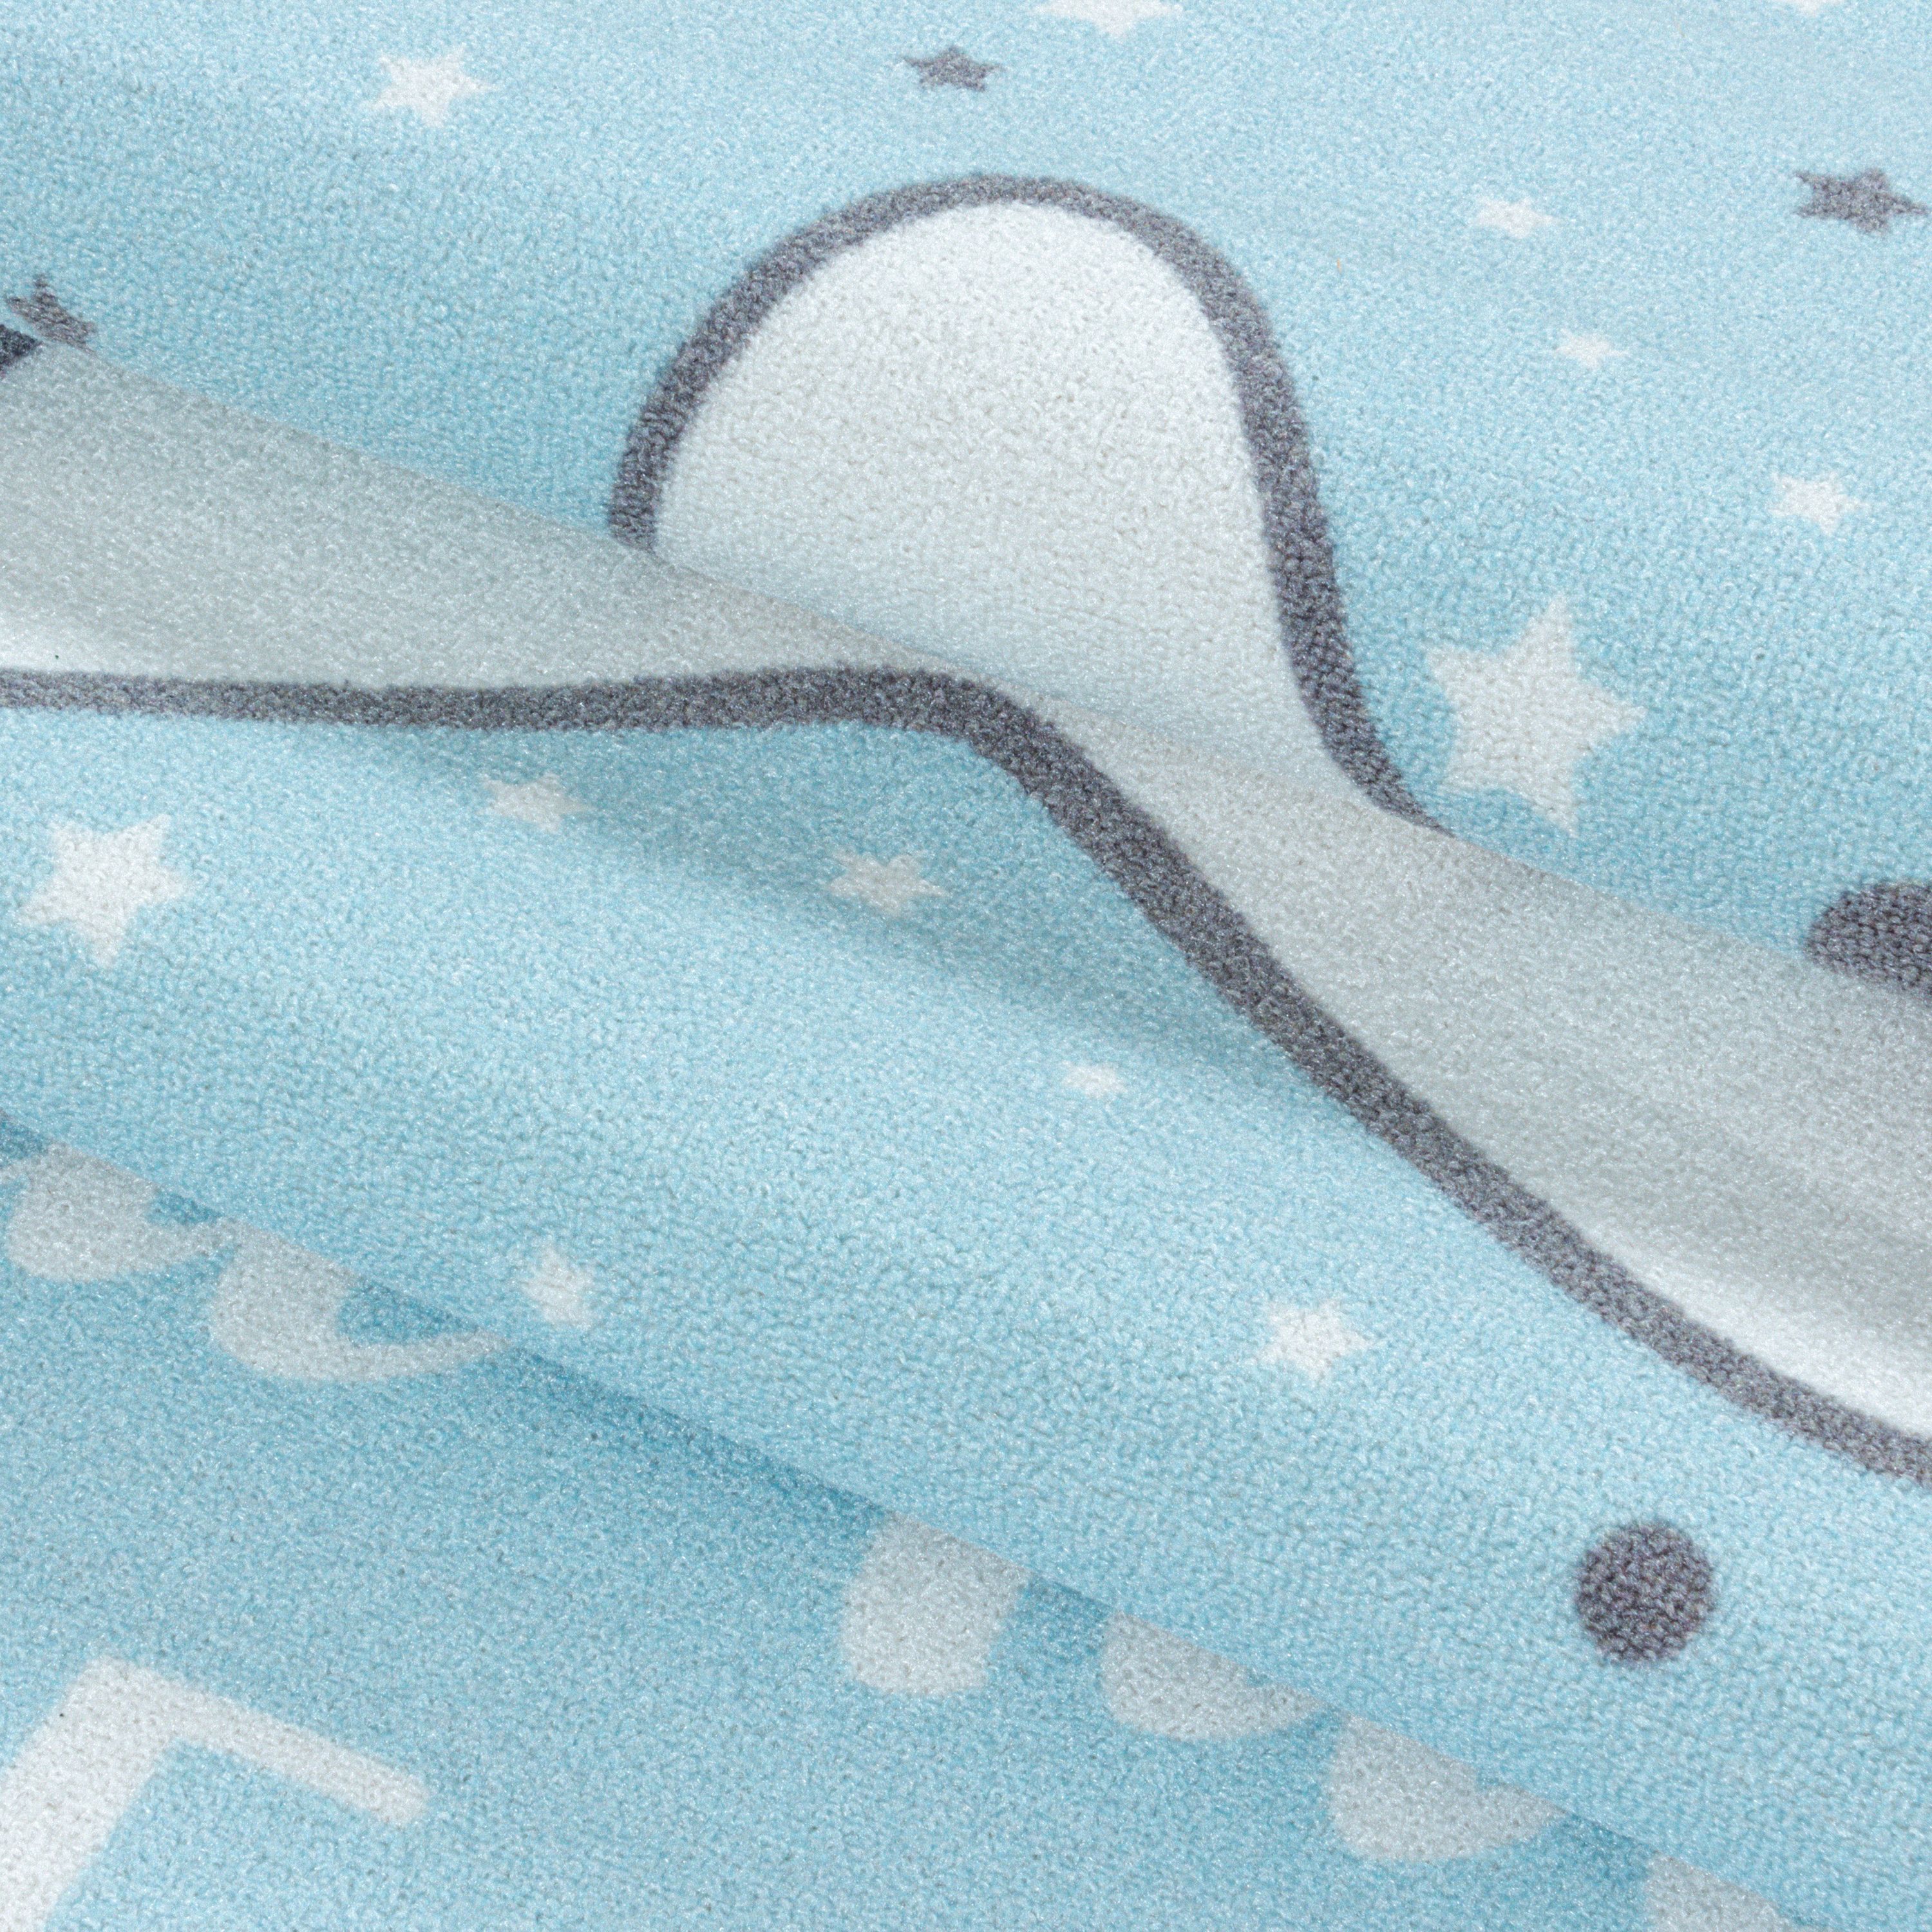 Kurzflor Kinderteppich Kinderzimmer Teppich Spielteppich Motiv Baby Stern Blau